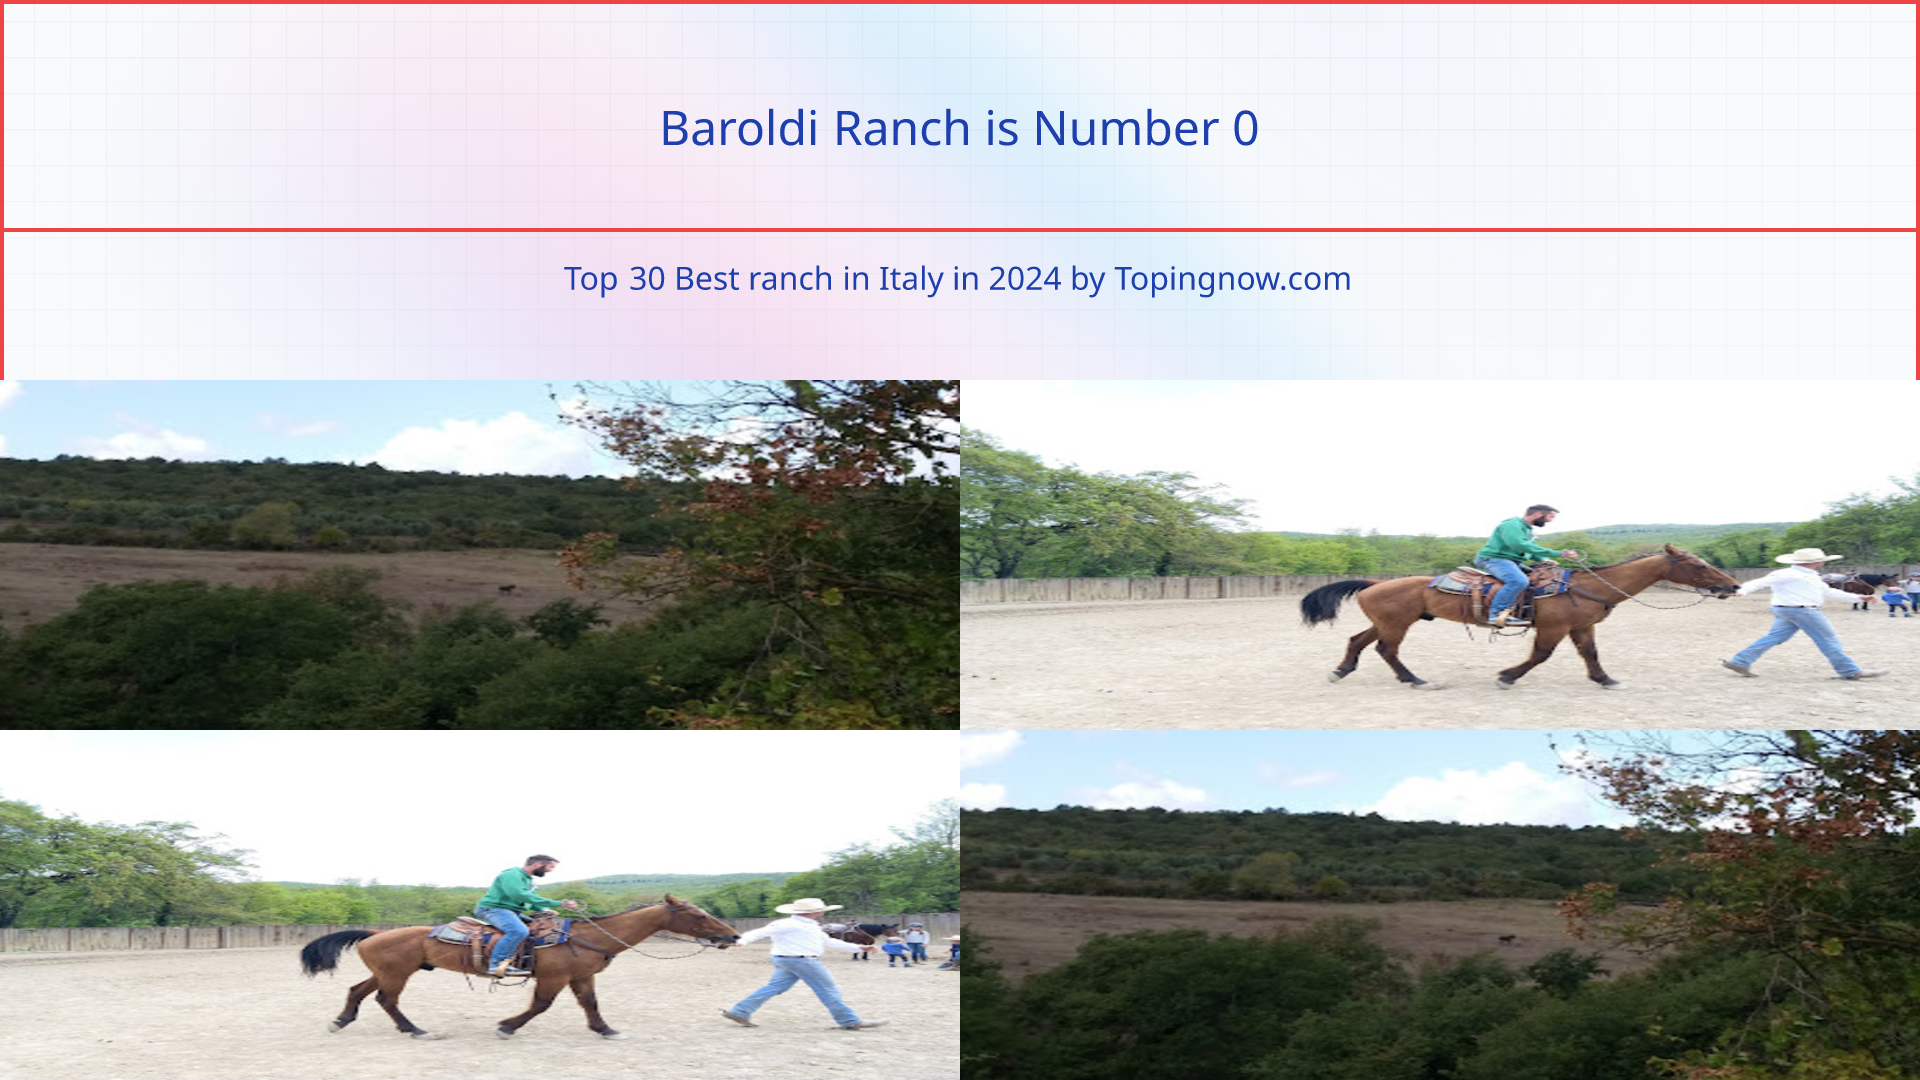 Baroldi Ranch: Top 30 Best ranch in Italy in 2024